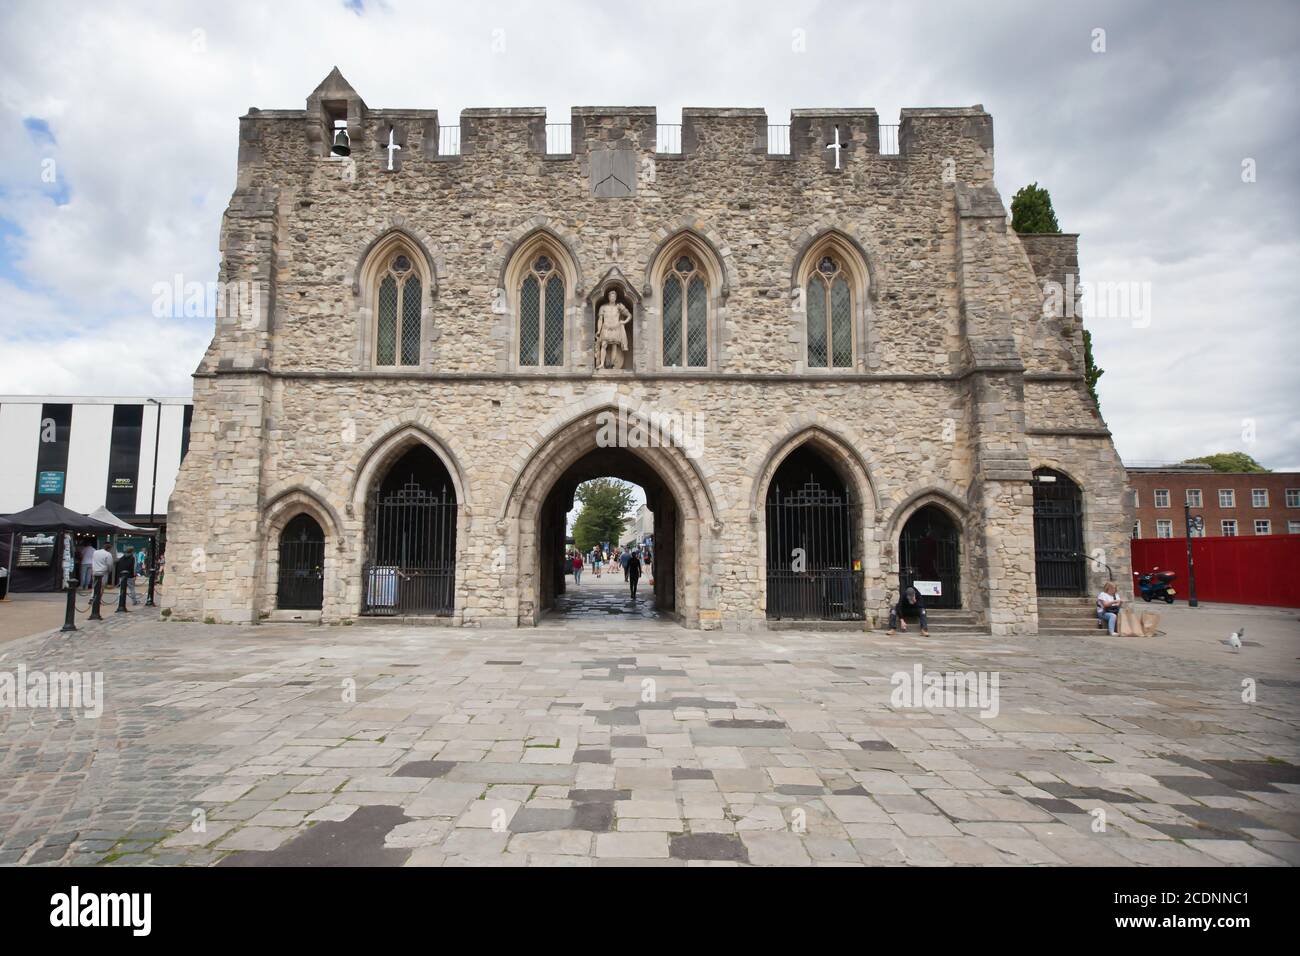 Le Bargate à Southampton, un Gatehouse médiéval dans la ville, dans le Hampshire au Royaume-Uni, pris le 10 juillet 2020 Banque D'Images